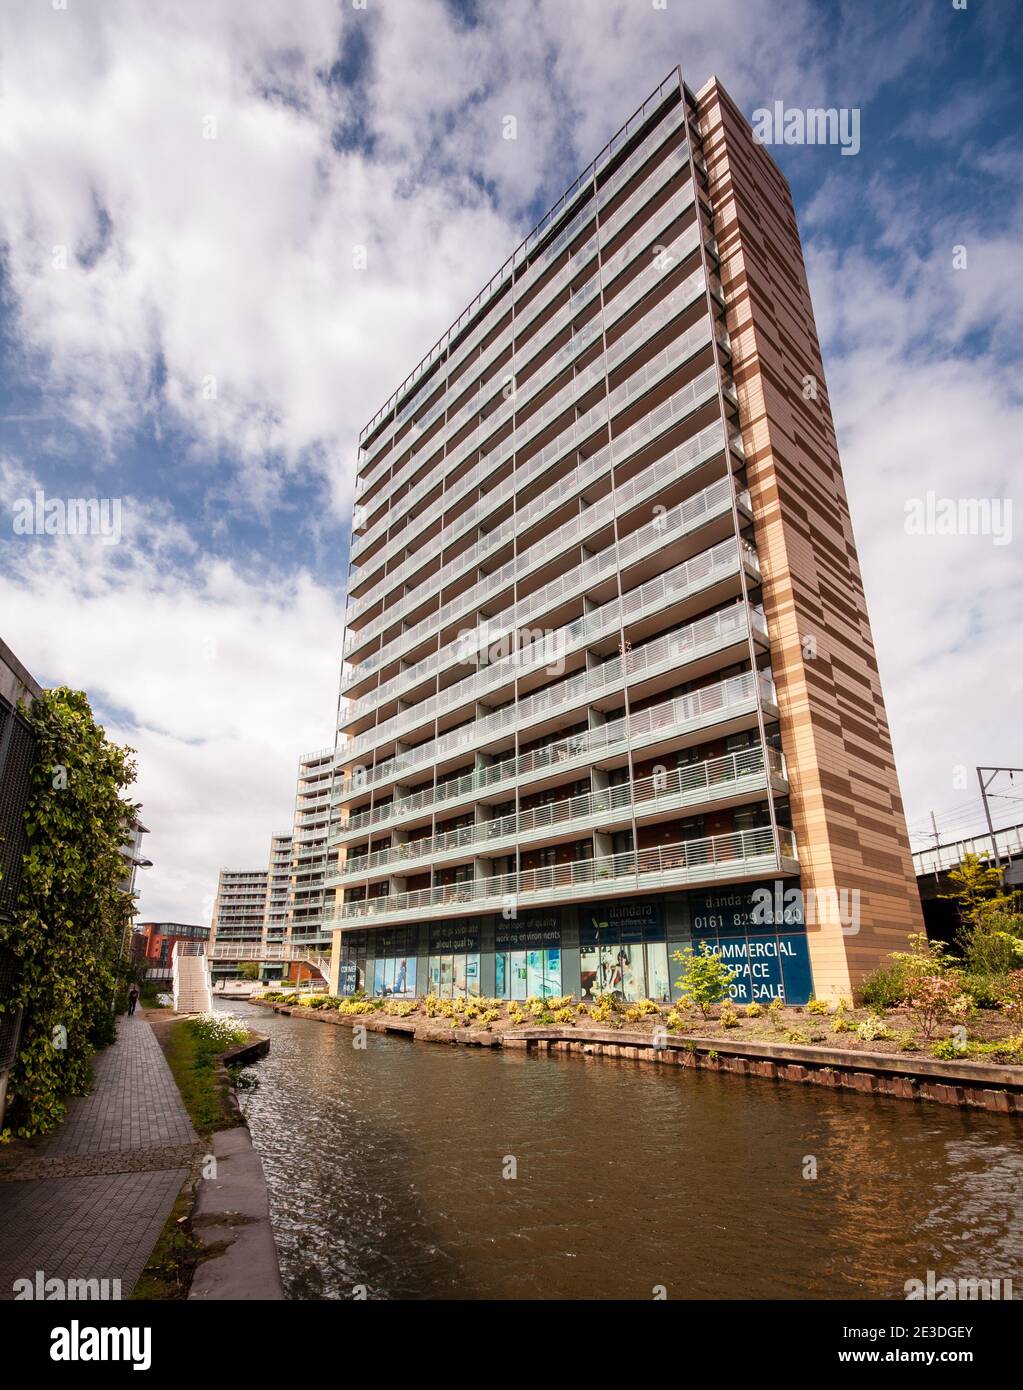 Moderni ed alti edifici di appartamenti si trovano su terreni industriali ristrutturati accanto al canale Bridgewater a Manchester. Foto Stock